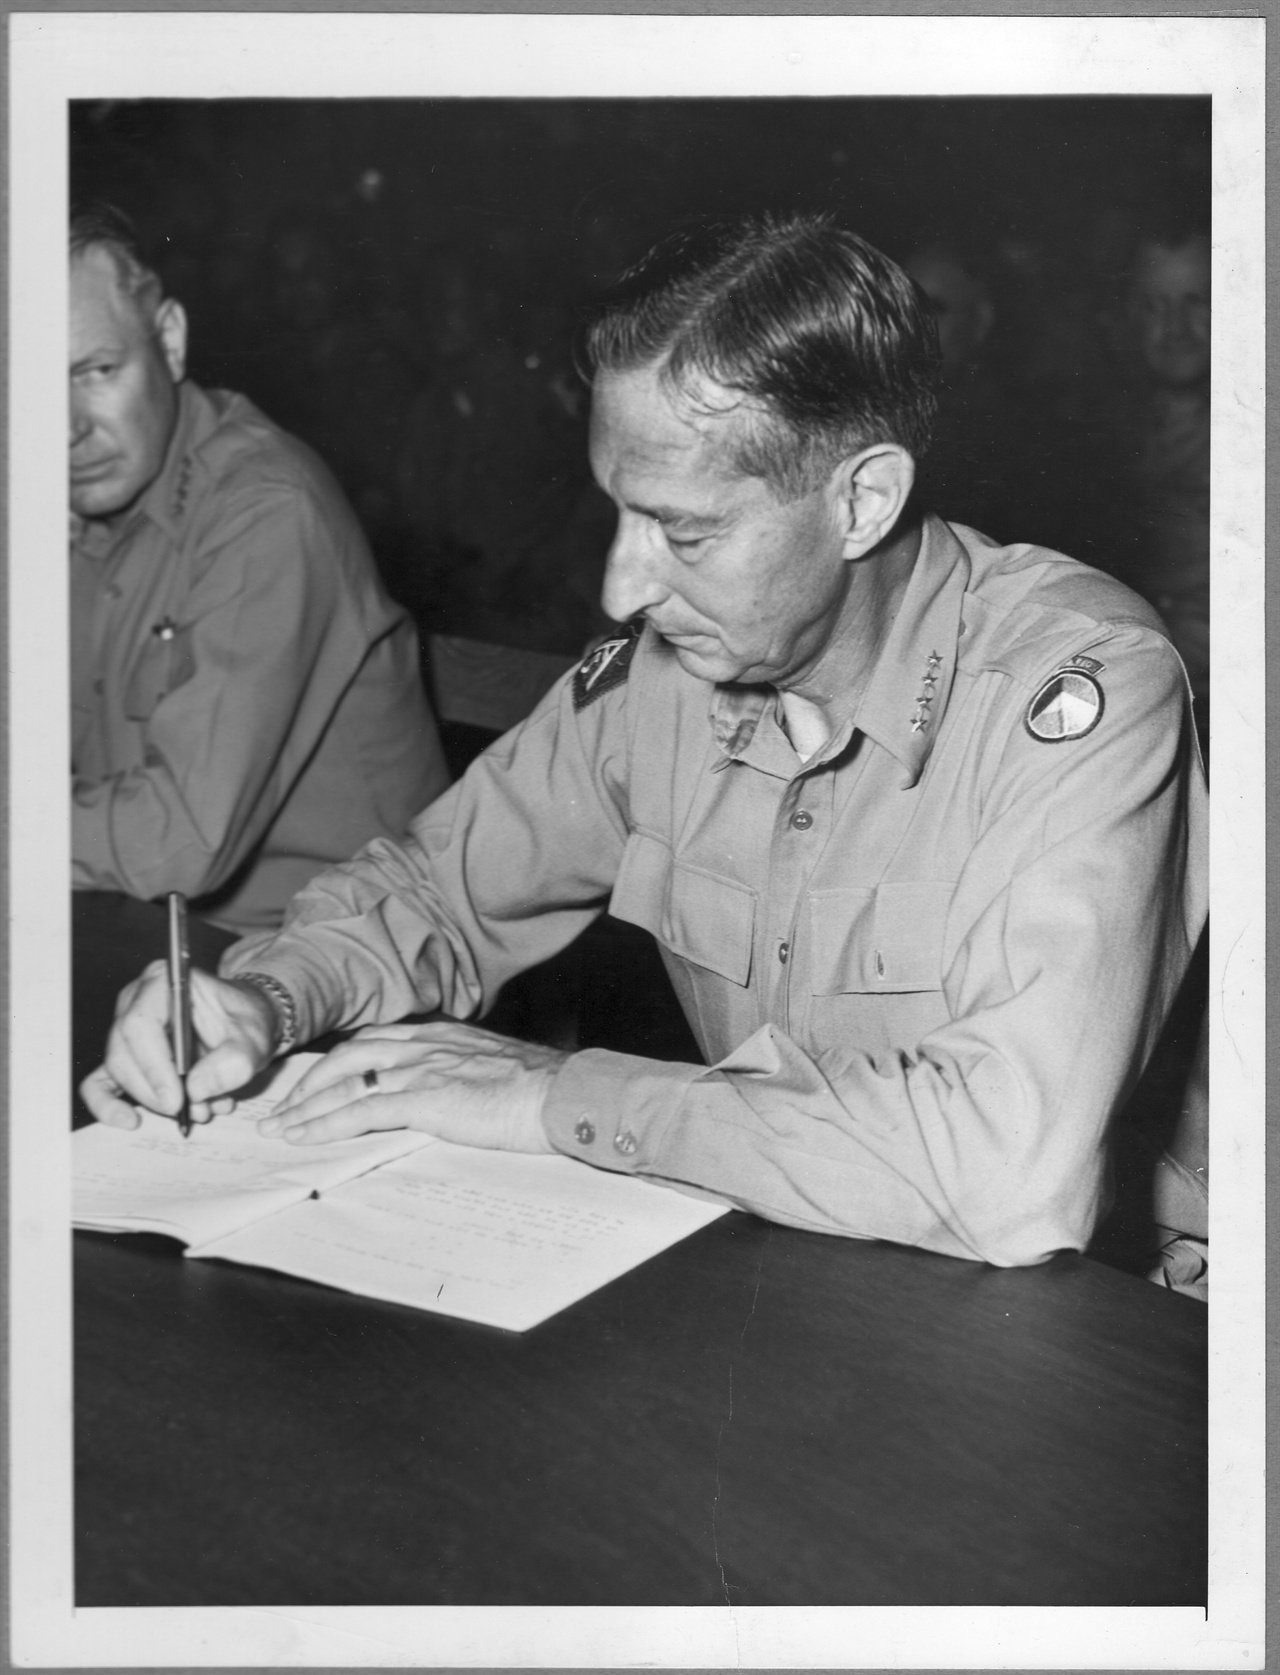  1953. 7. 30. 유엔군 사령관 클라크 장군 정전협정문에 서명하고 있다.